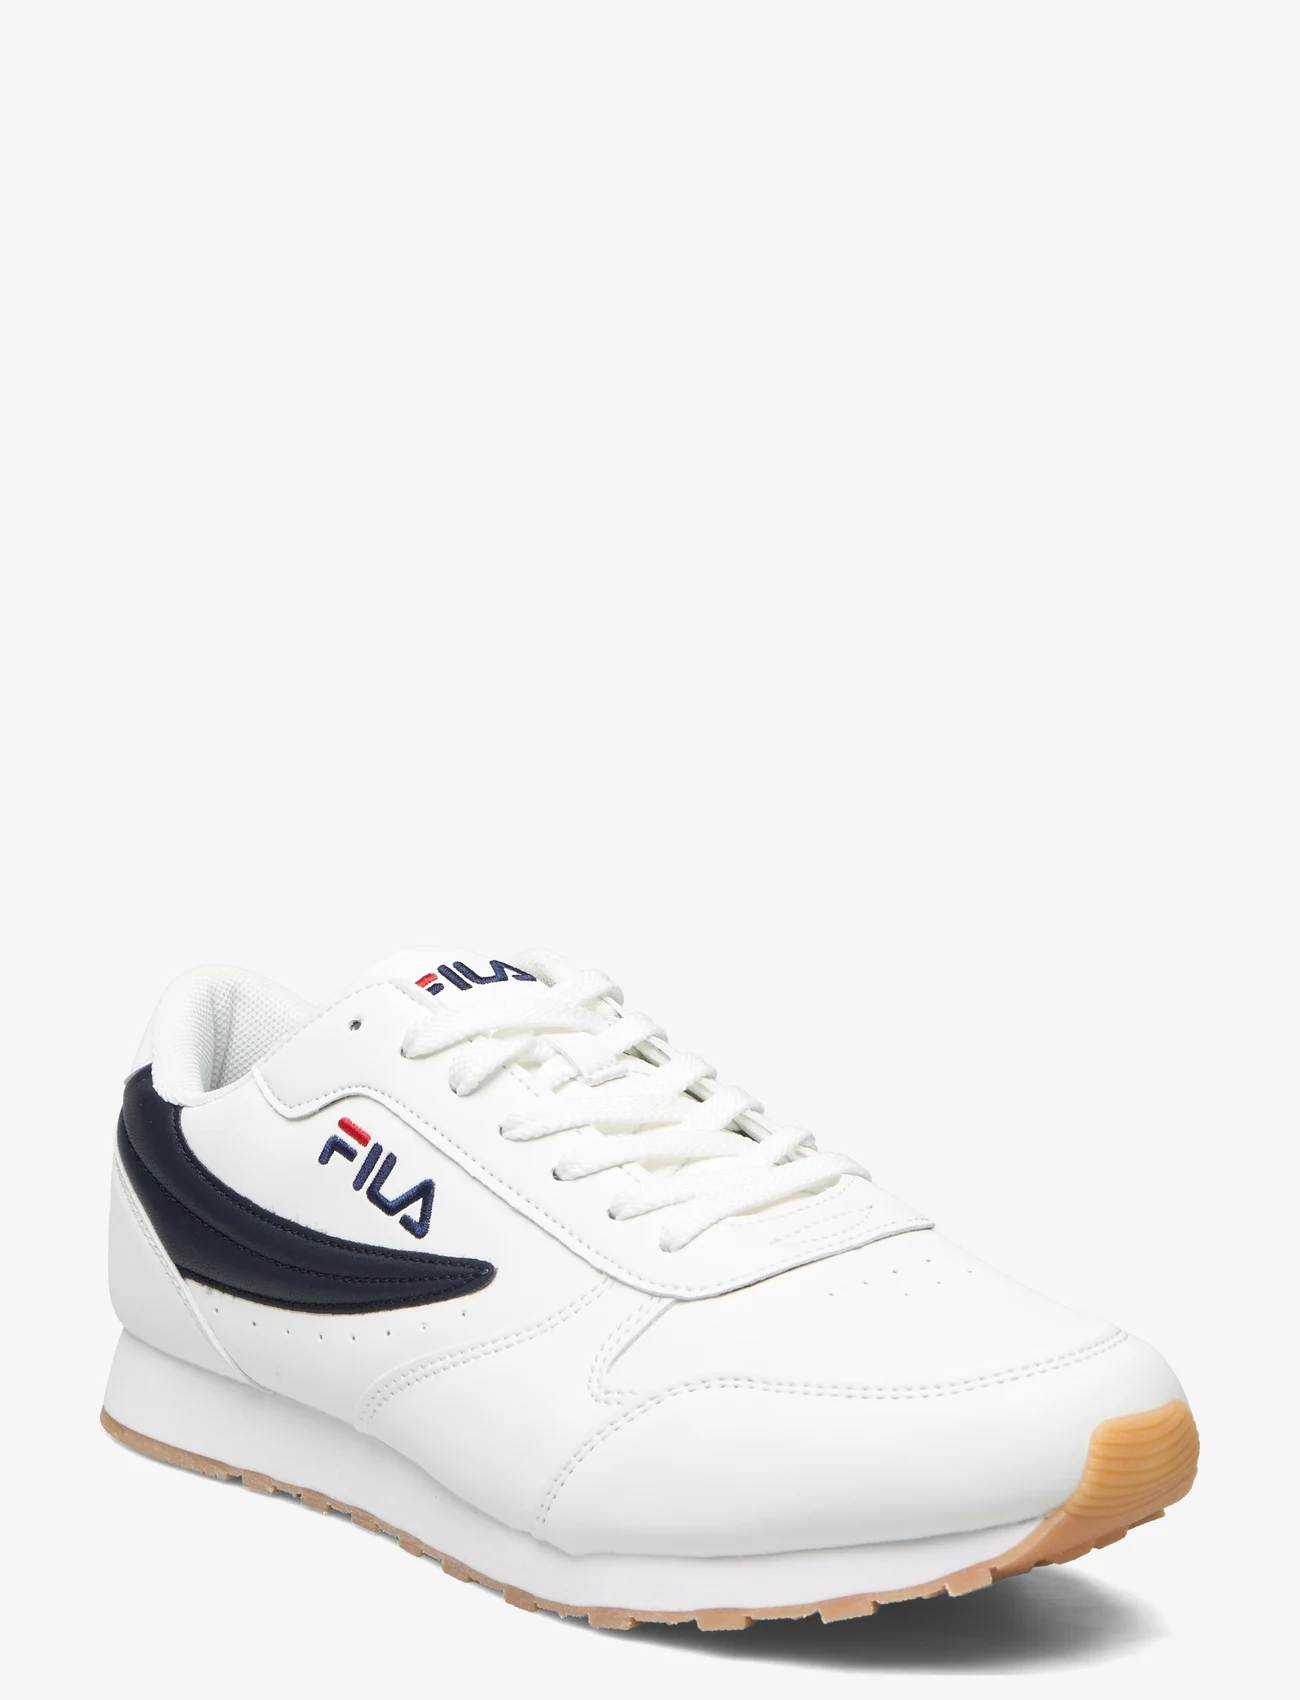 FILA - Orbit low - laag sneakers - white / dress blue - 0